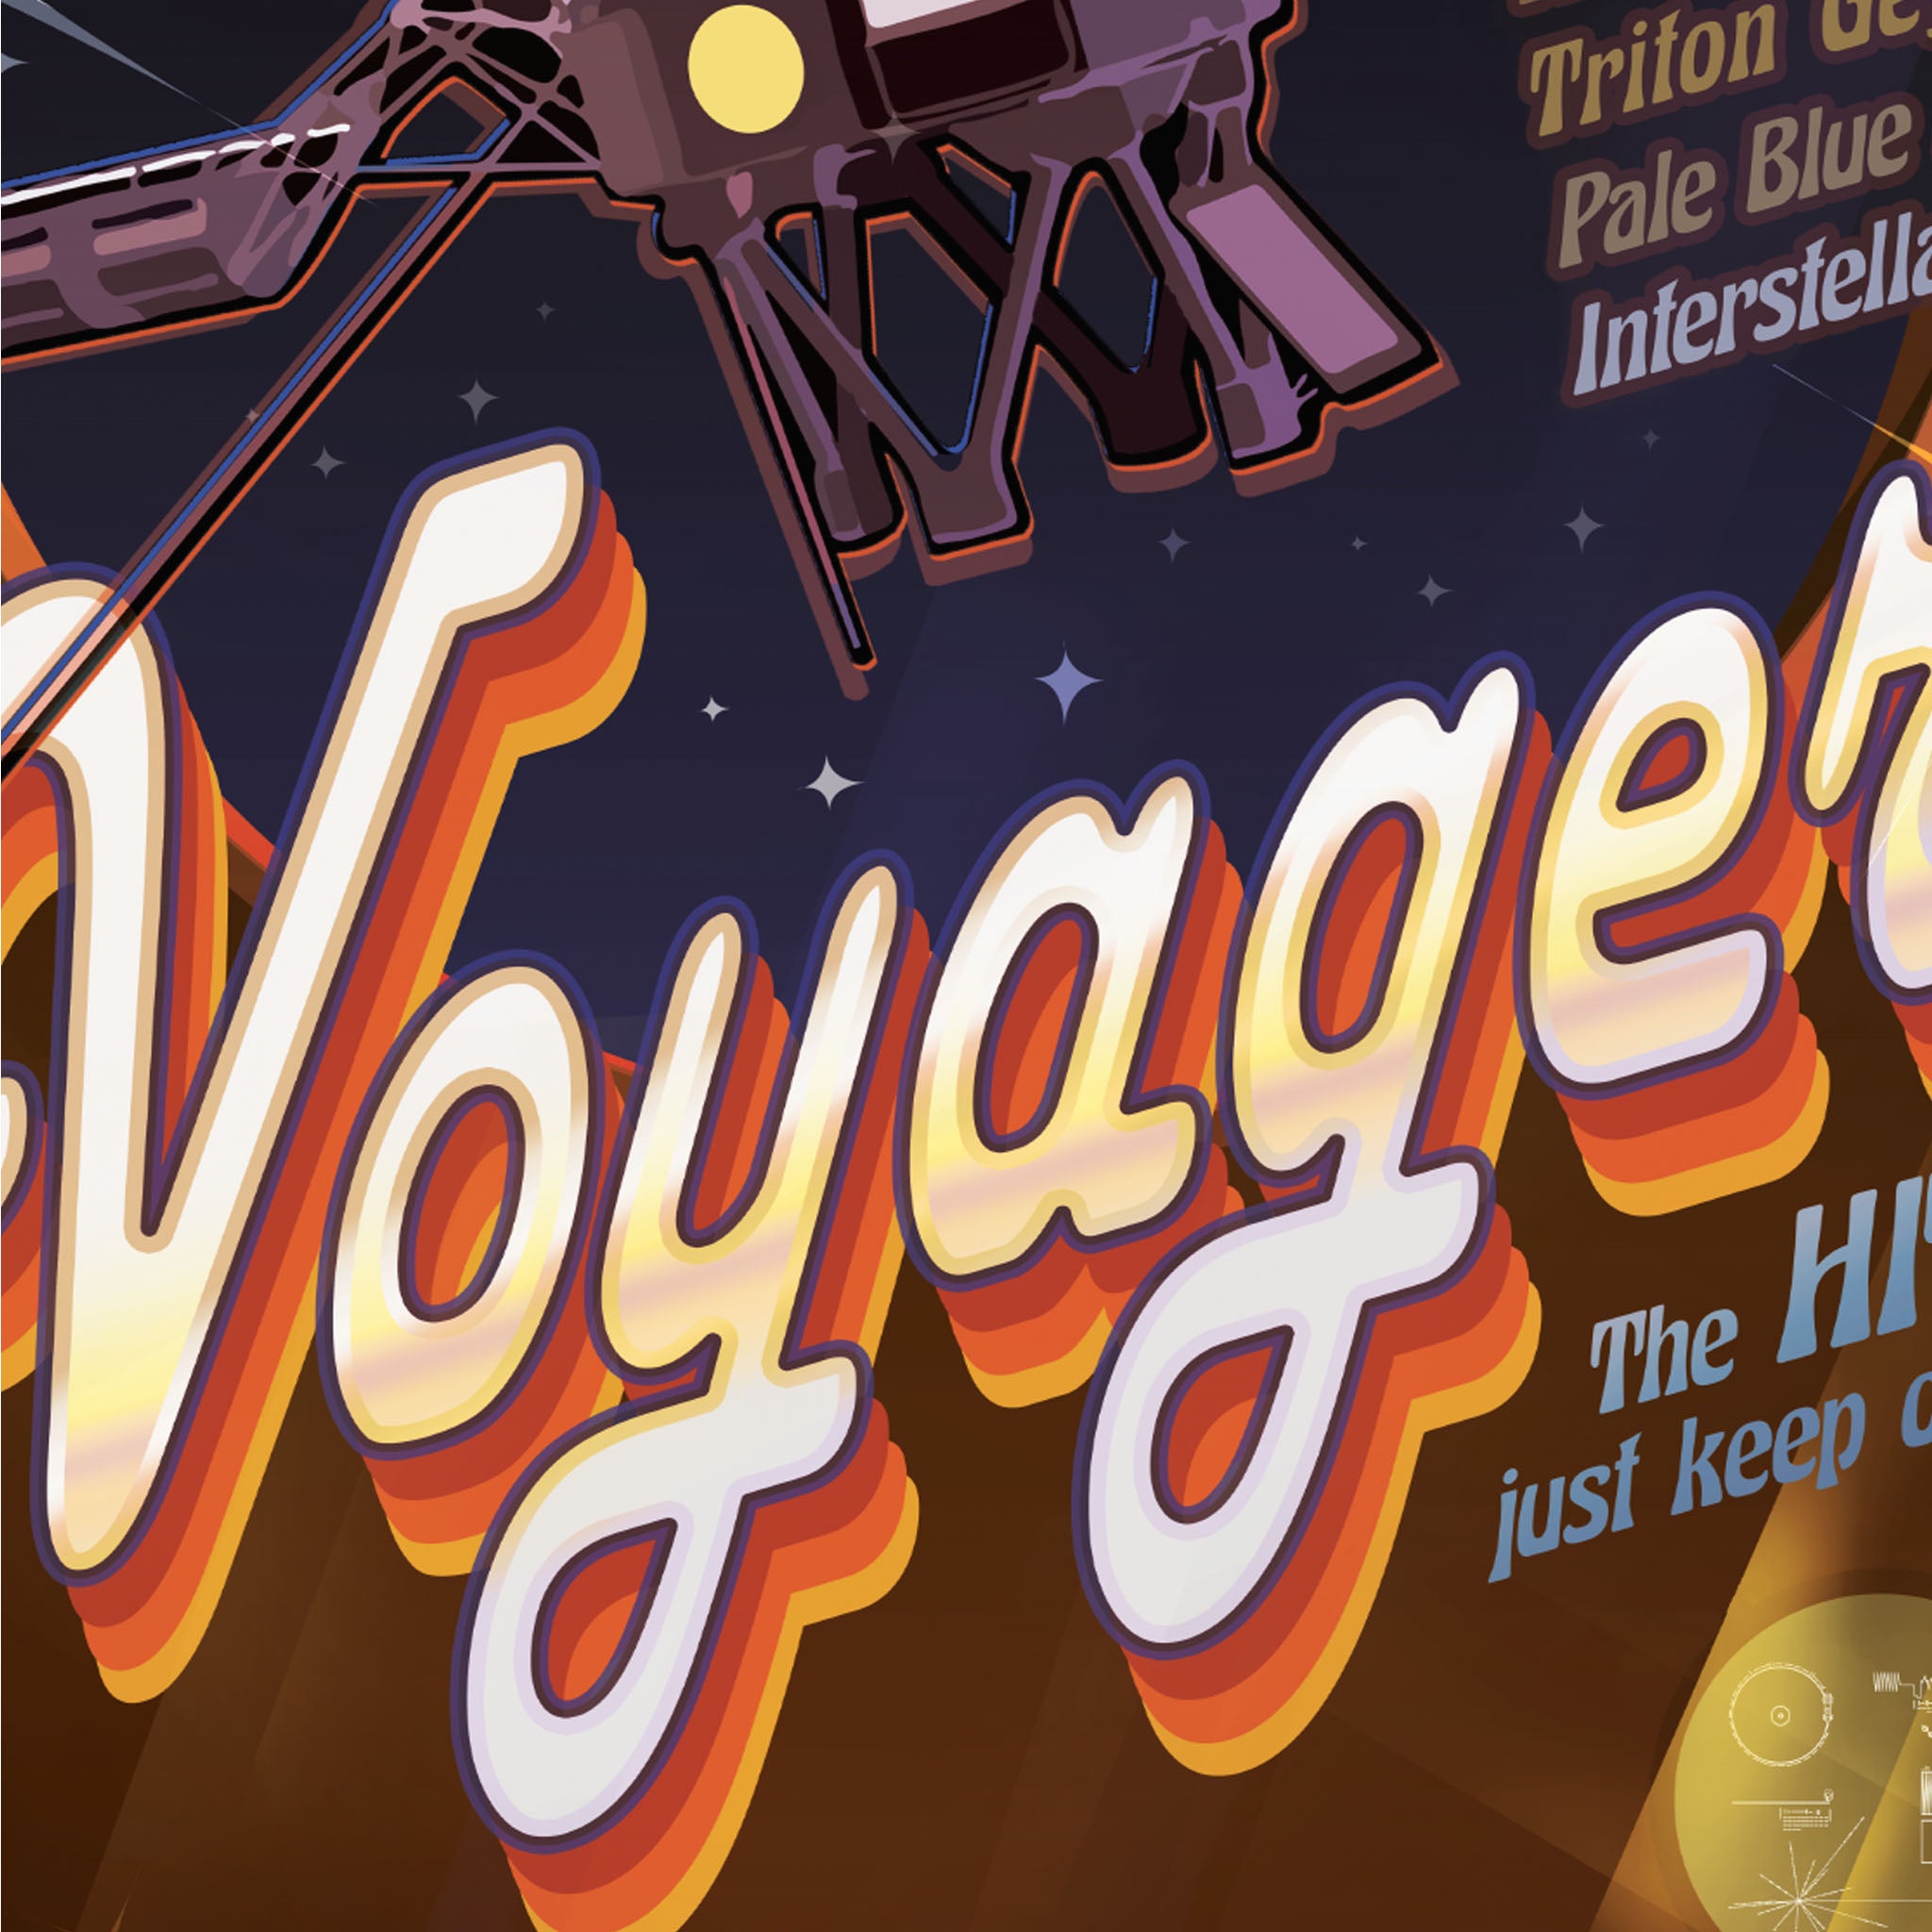 Voyager - Plakat NASA